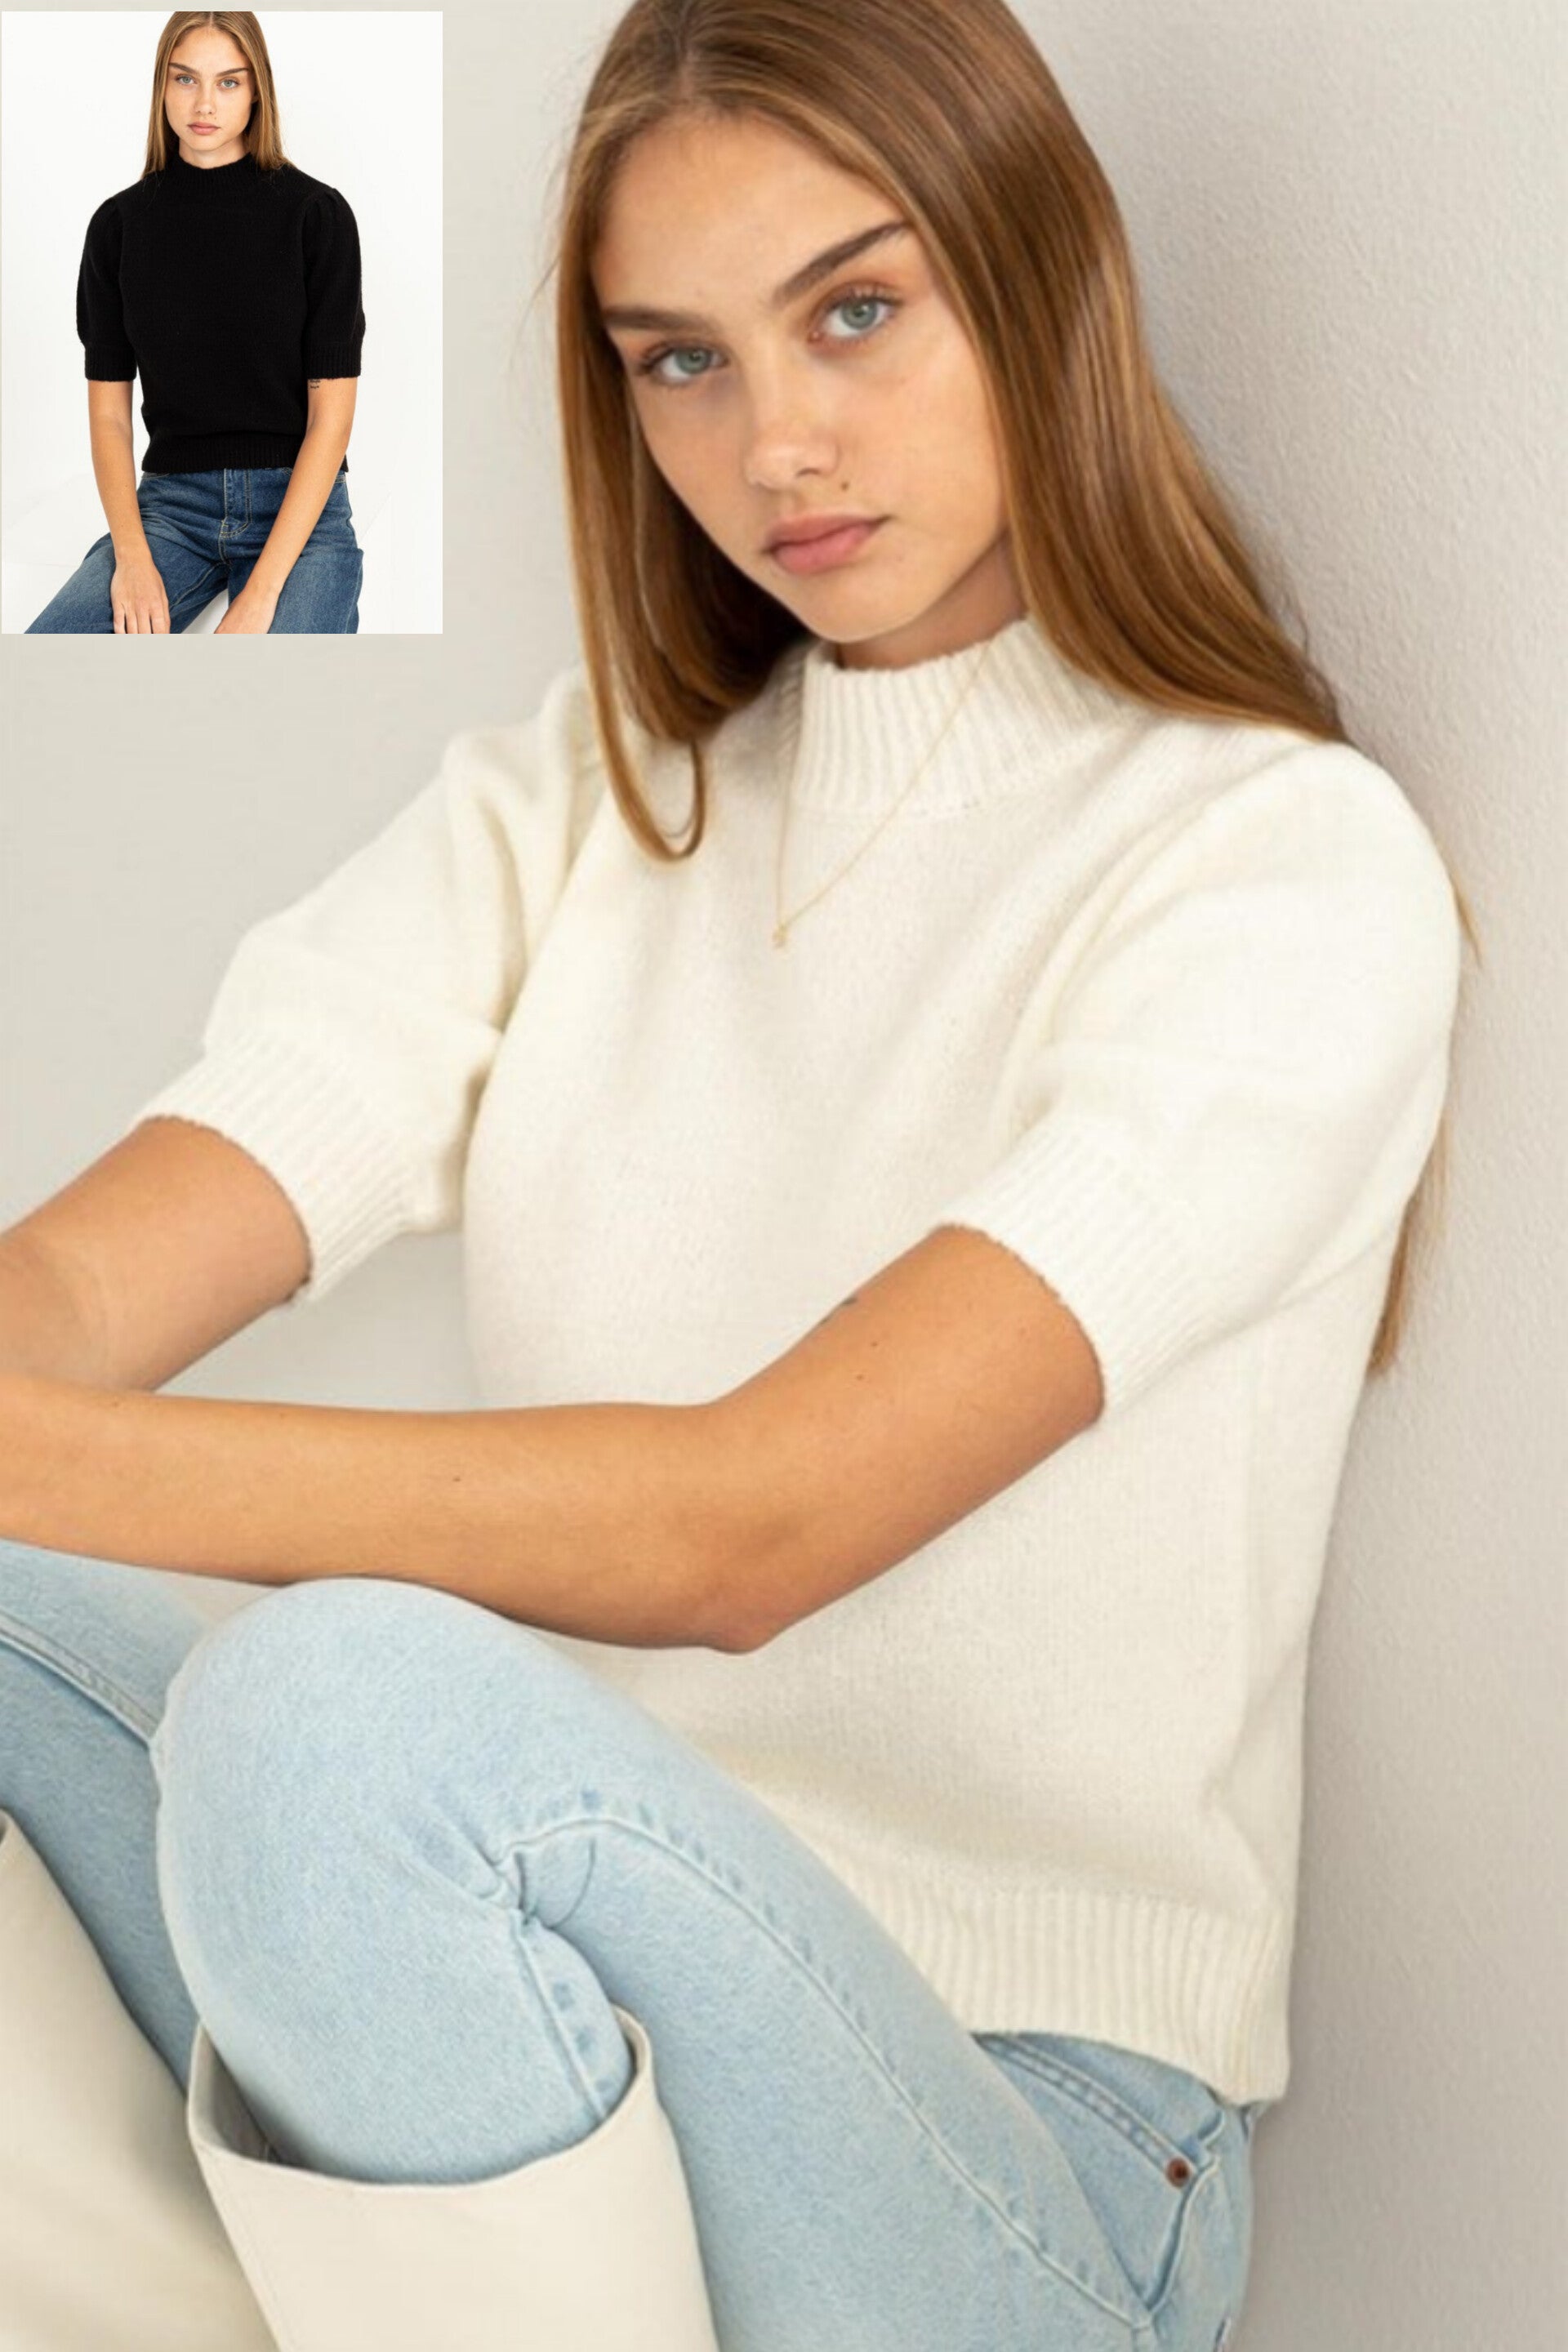 Cynthia Puff Sleeve Sweater Top in Cream & Black